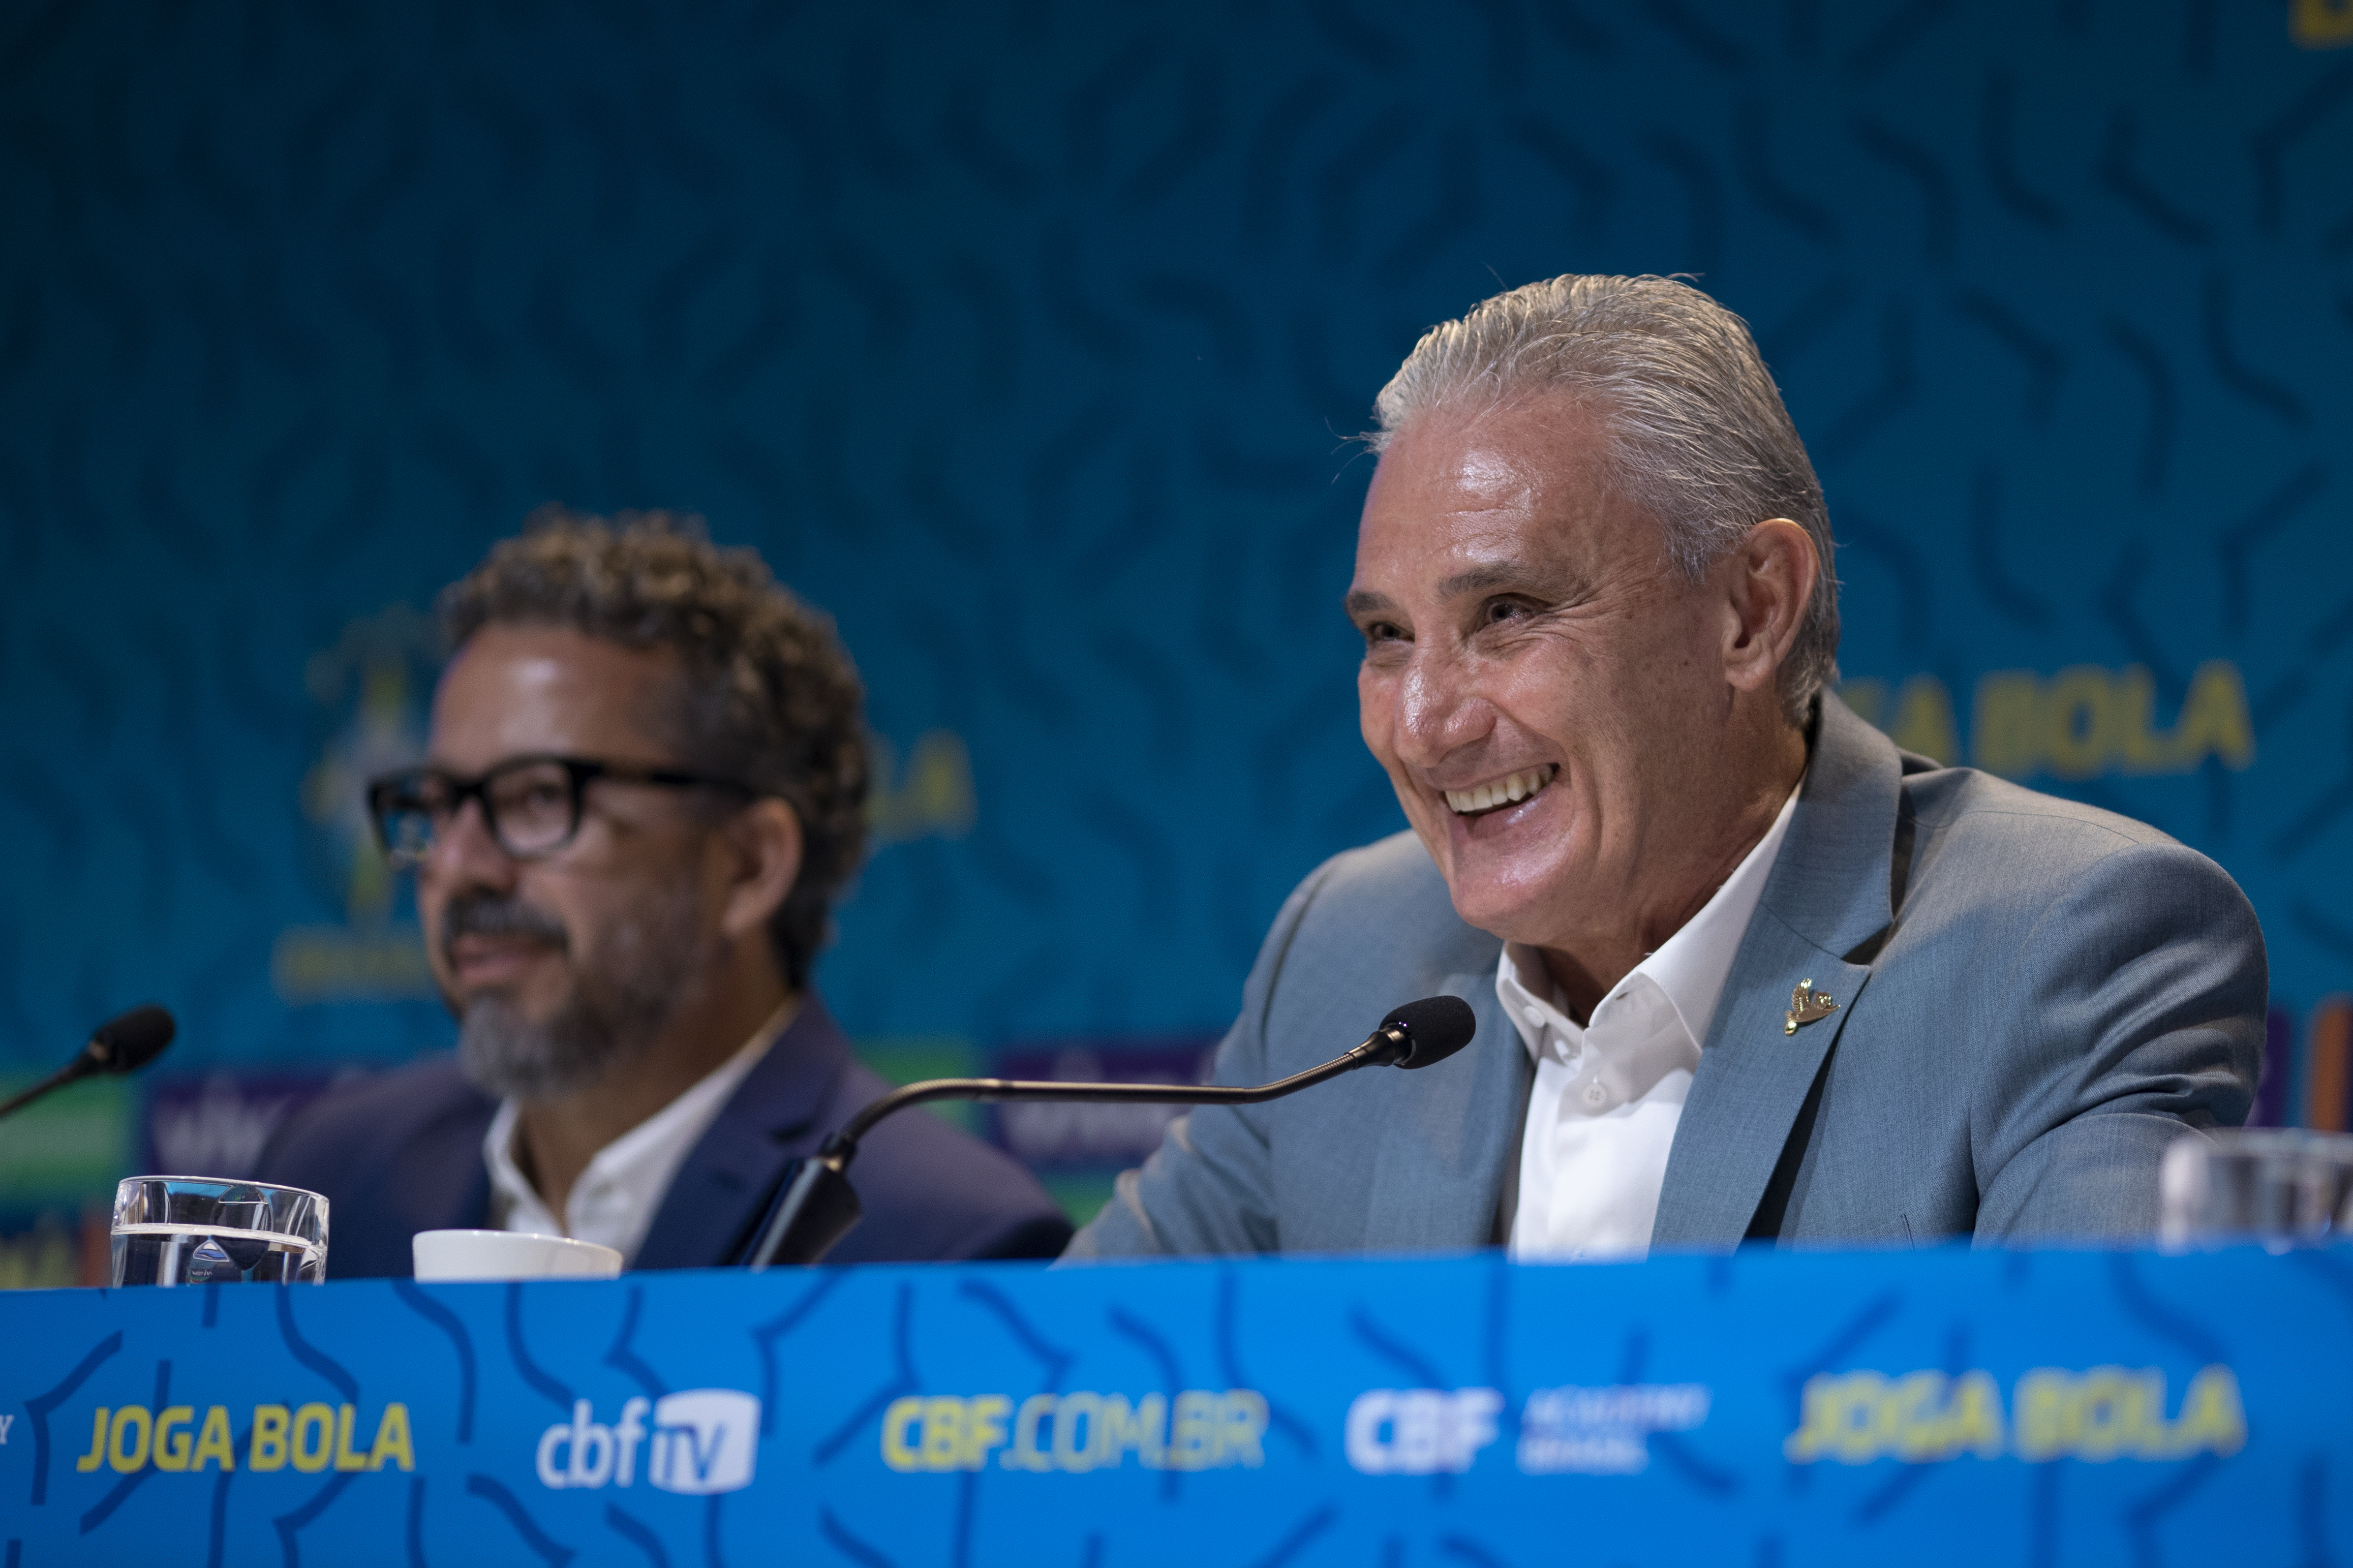 Copa do Catar 2022: datas, horários, e possíveis adversários